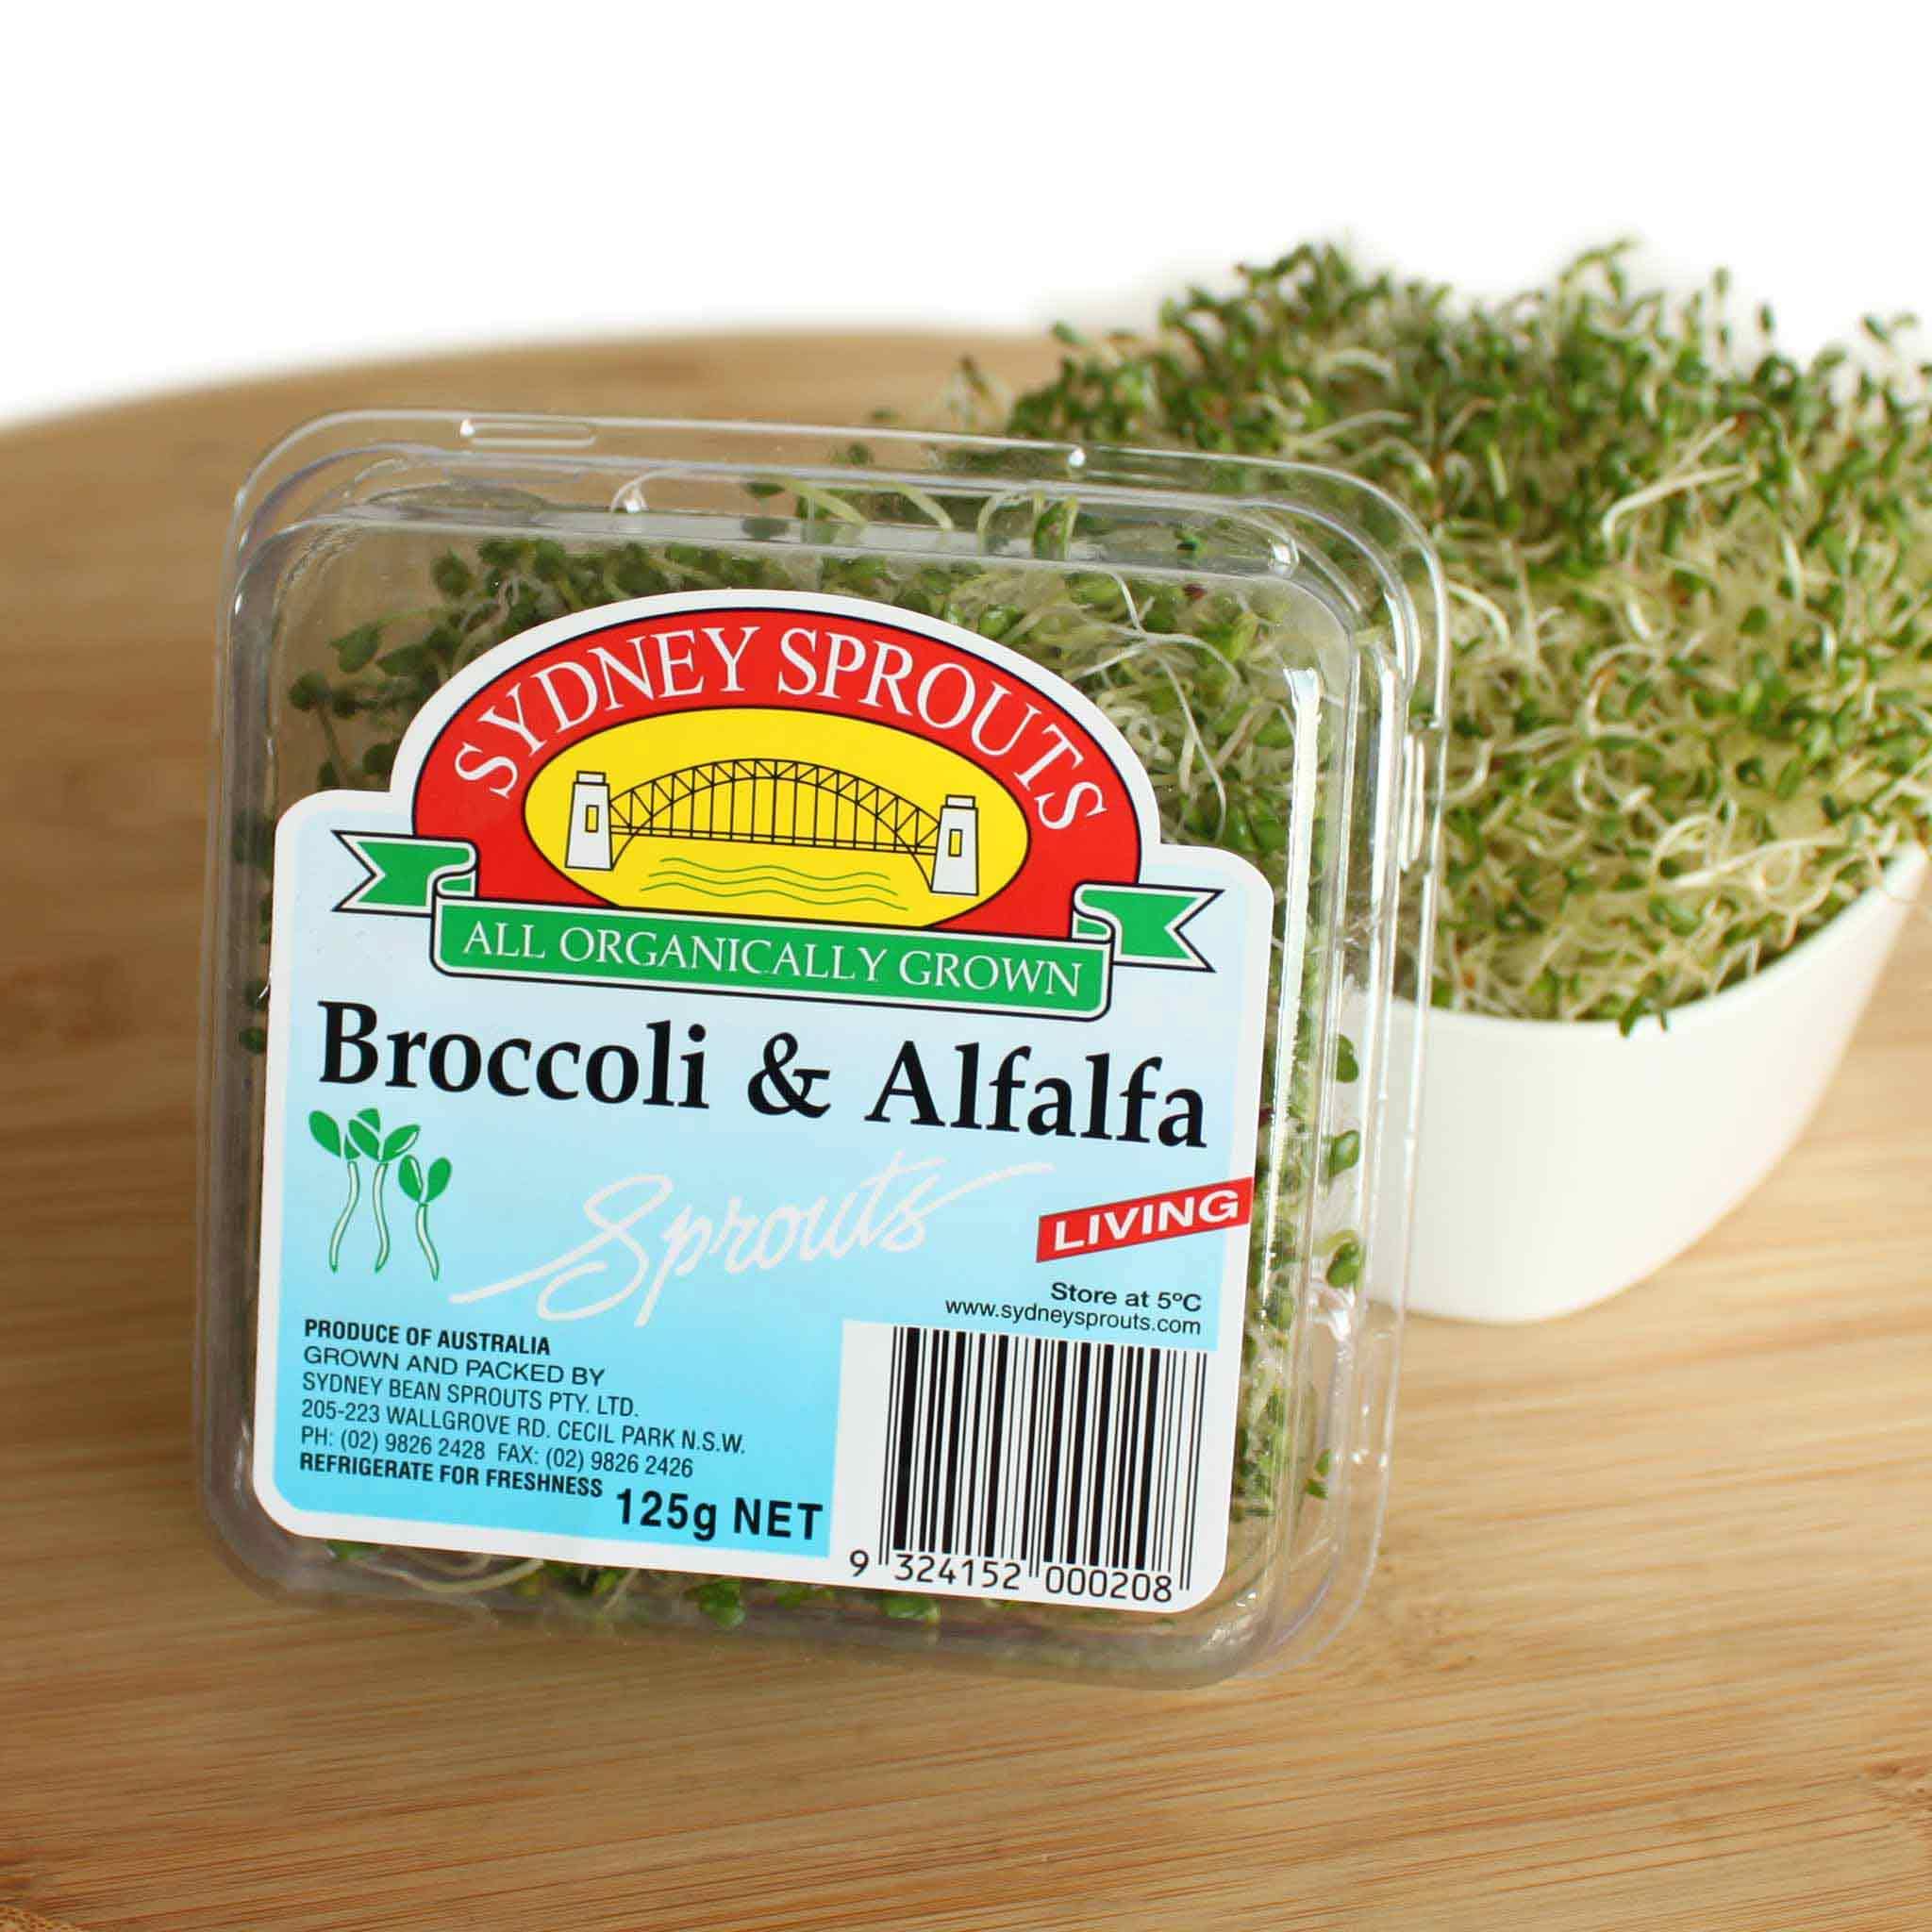 Broccoli & Alfalfa sprouts